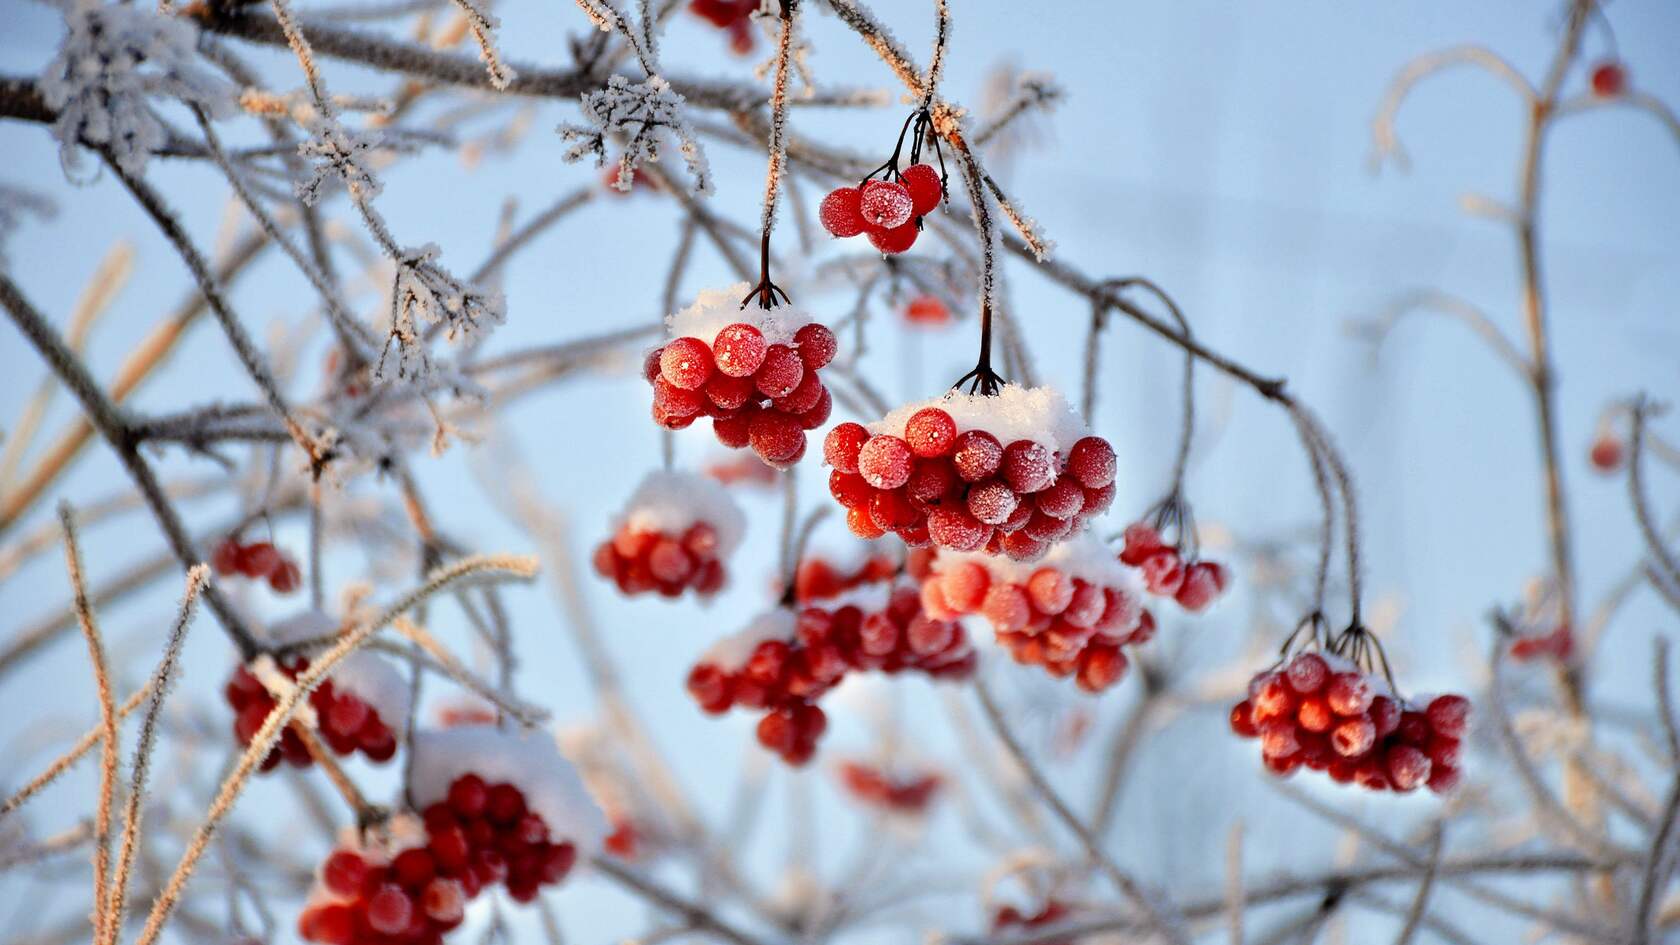 寒冷的冬 挂满雪 冰霜的红色浆果 琼花 琼花果实唯美景色壁纸图片第1张图片